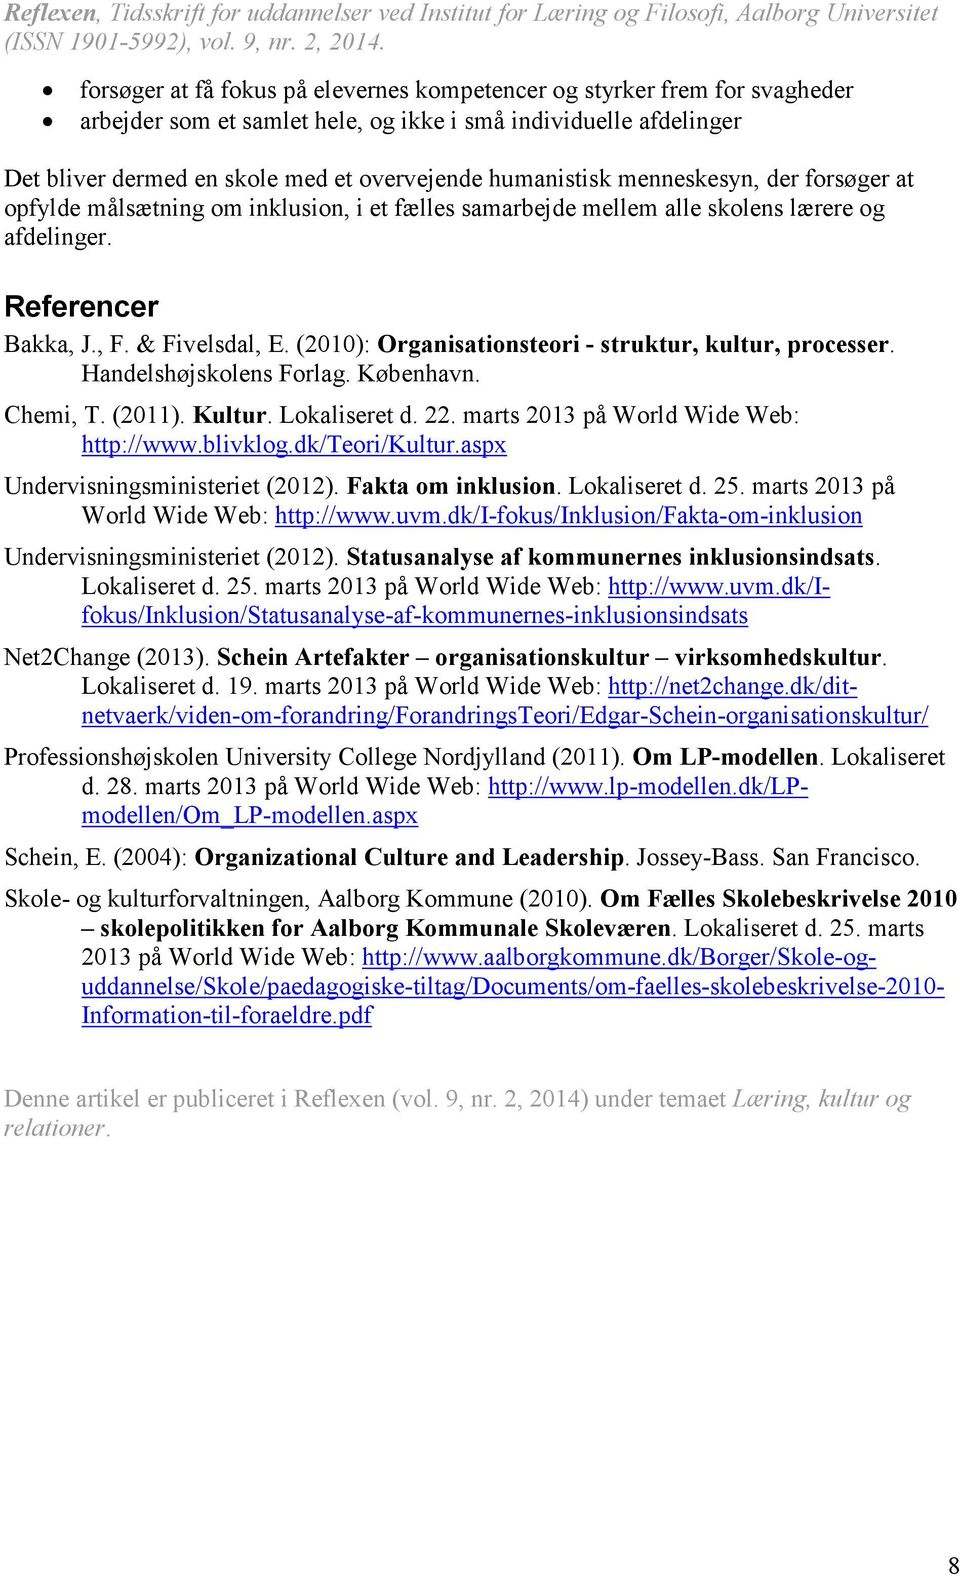 (2010): Organisationsteori - struktur, kultur, processer. Handelshøjskolens Forlag. København. Chemi, T. (2011). Kultur. Lokaliseret d. 22. marts 2013 på World Wide Web: http://www.blivklog.